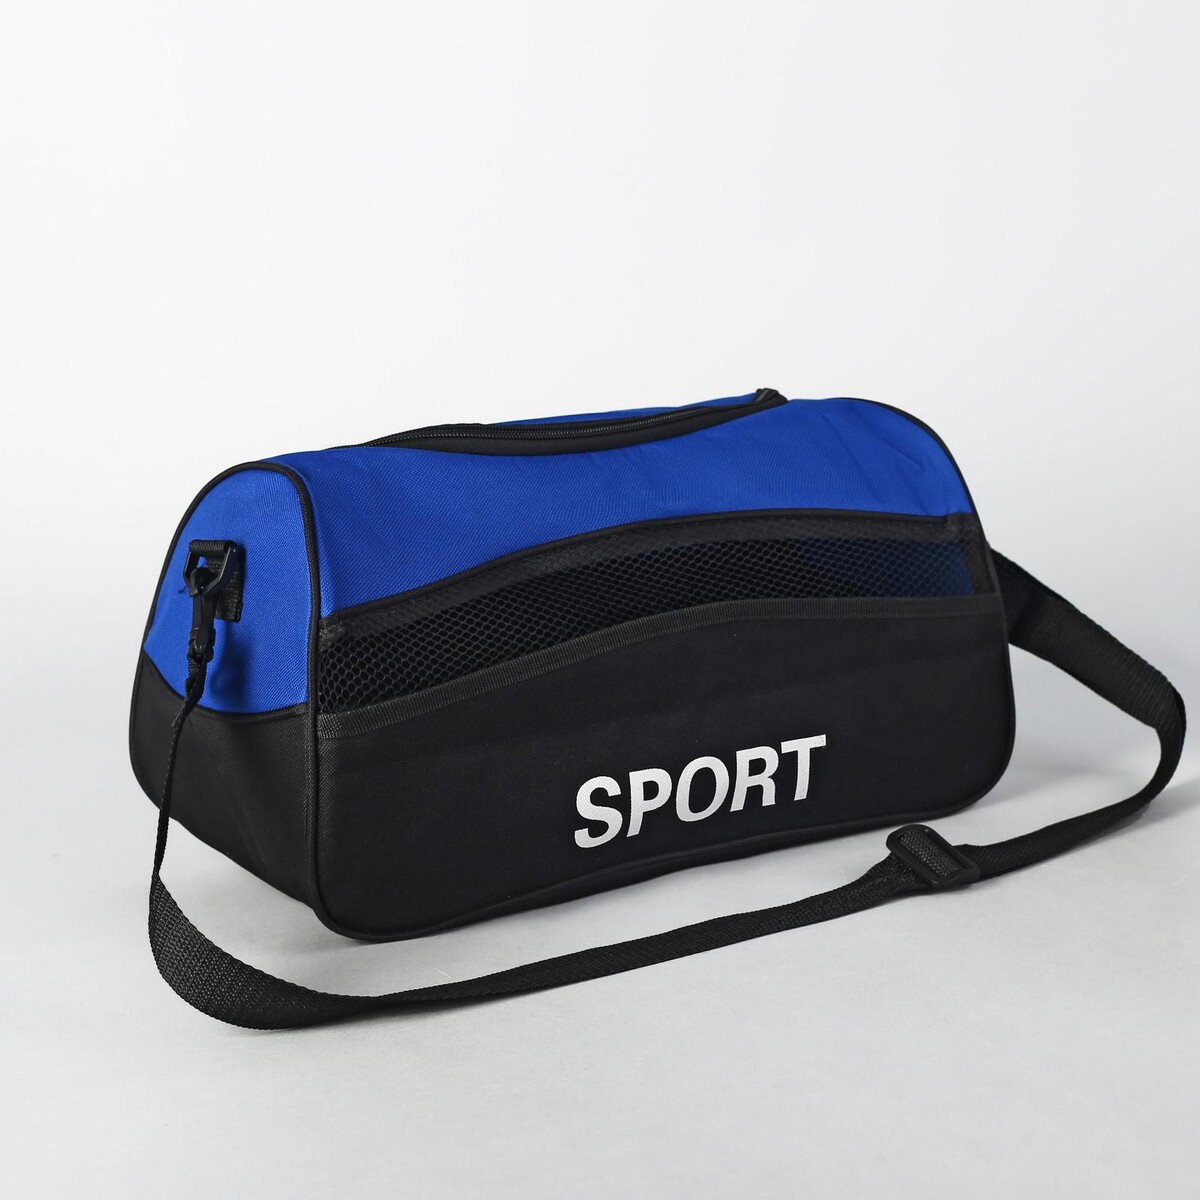 Сумка спортивная на молнии, наружный карман, длинный ремень, цвет синий/черный сумка спортивная футбол 40х21х24 см